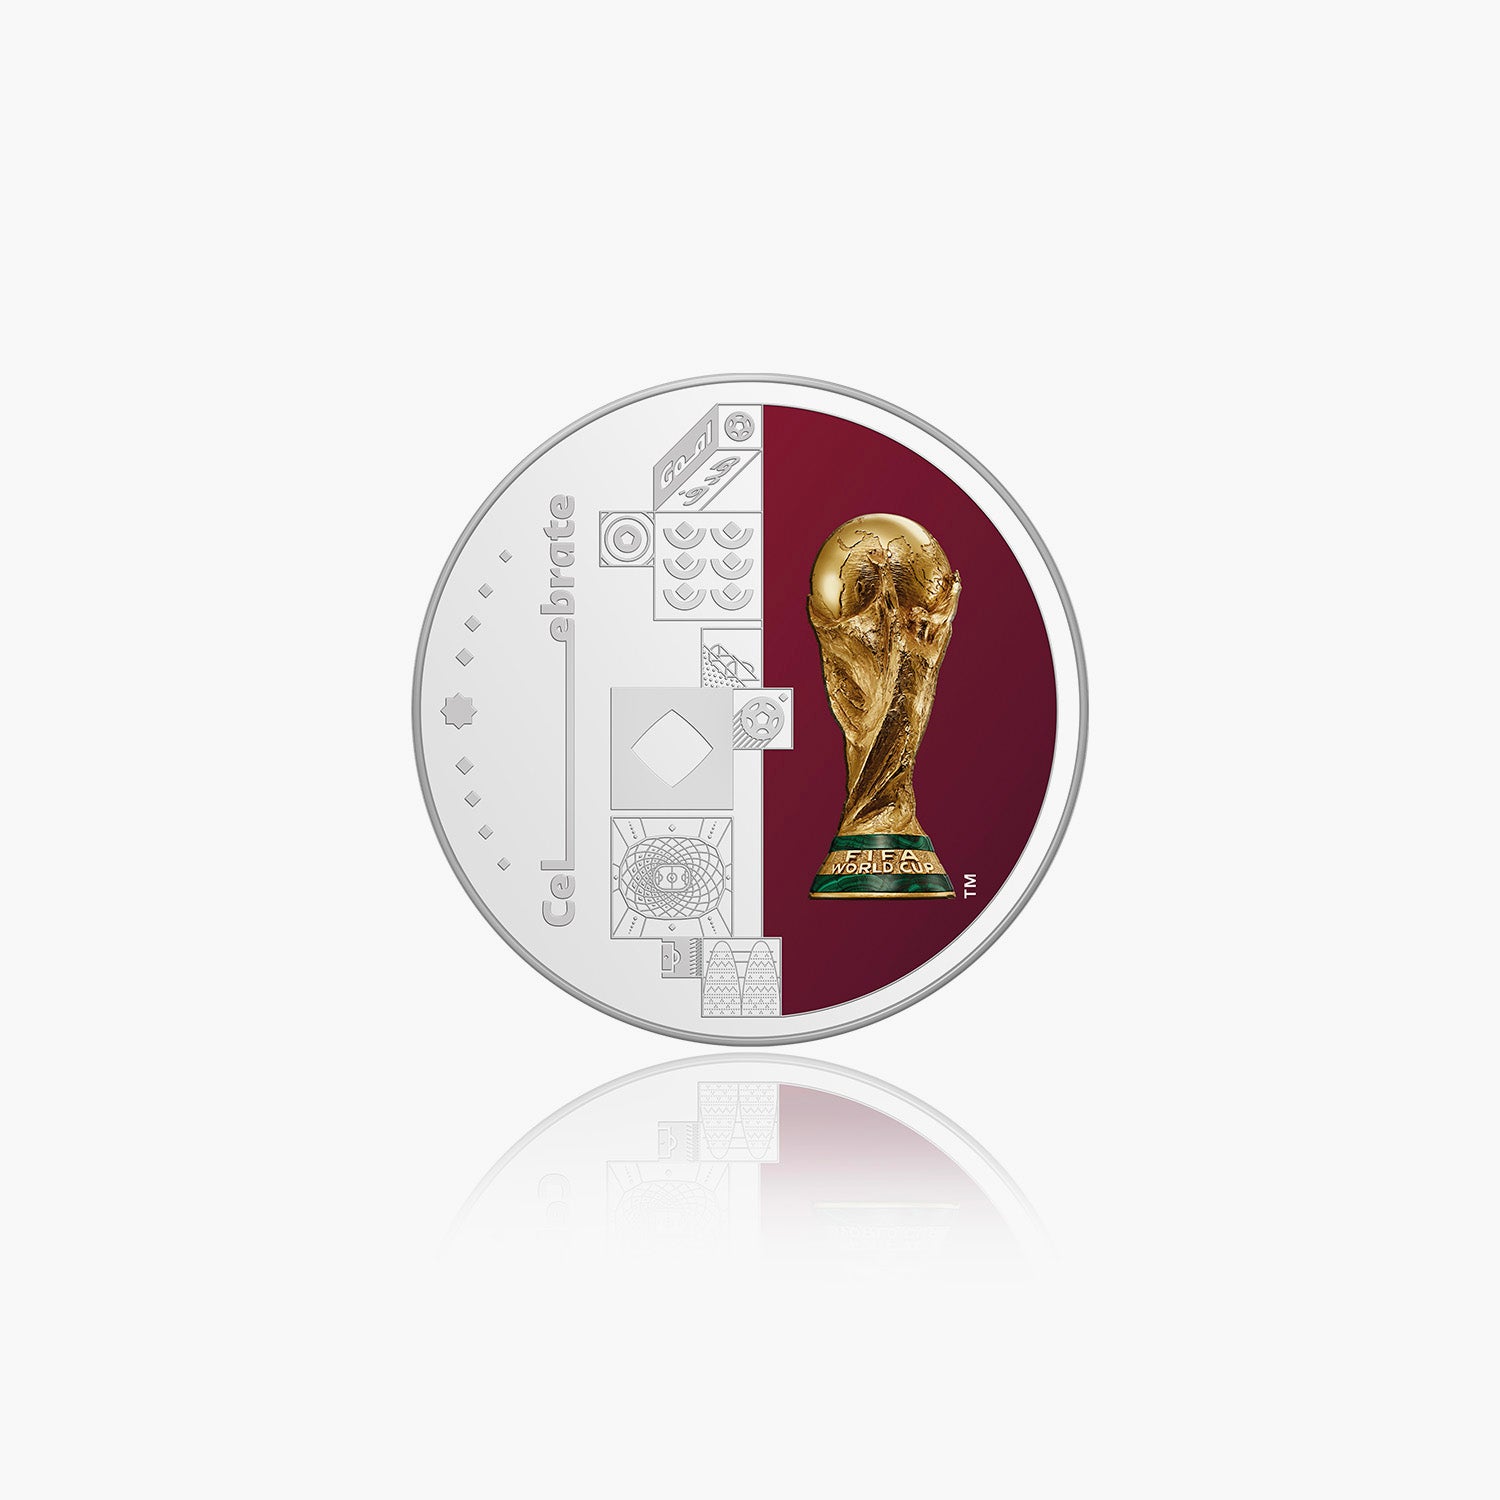 FIFA World Cup 2022 44mm Commemorative